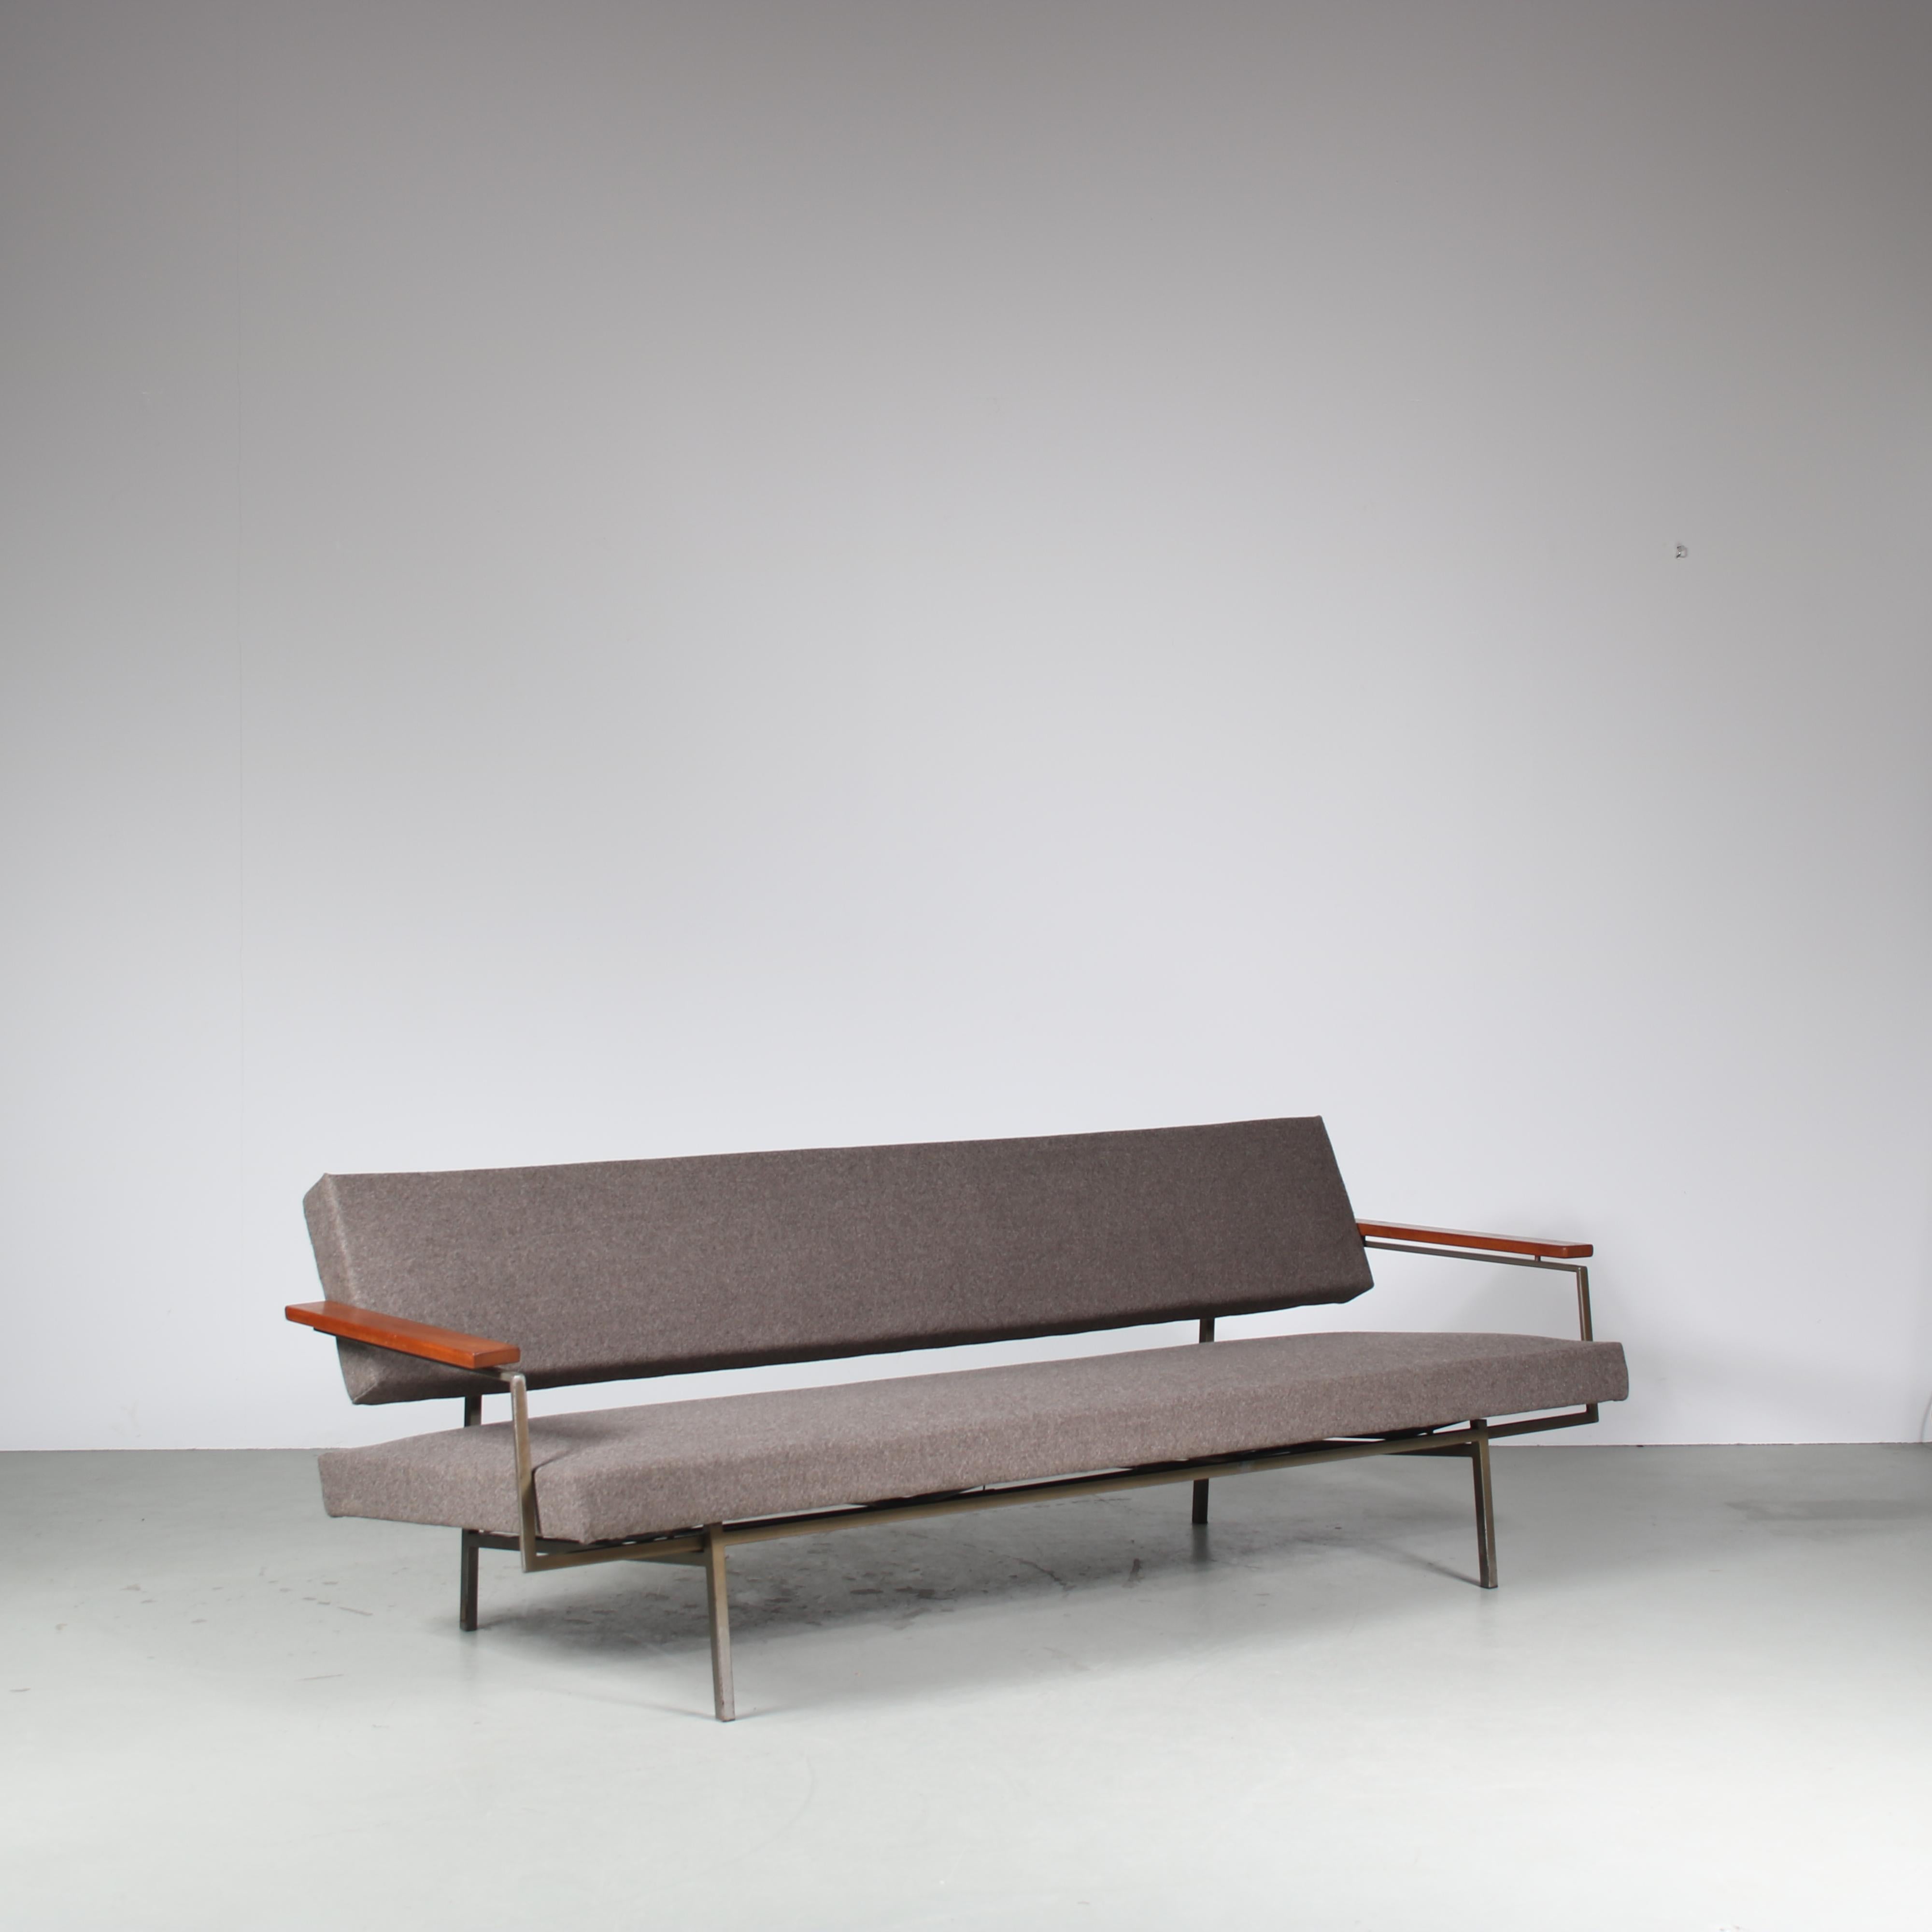 Ein luxuriöses Schlafsofa, entworfen von Rob Parry, hergestellt von Gelderland in den Niederlanden um 1960.

Dieses auffällige Sofa hat ein schönes Stahlgestell, warme Armlehnen aus braunem Holz und ist mit einem hochwertigen grauen Stoff neu